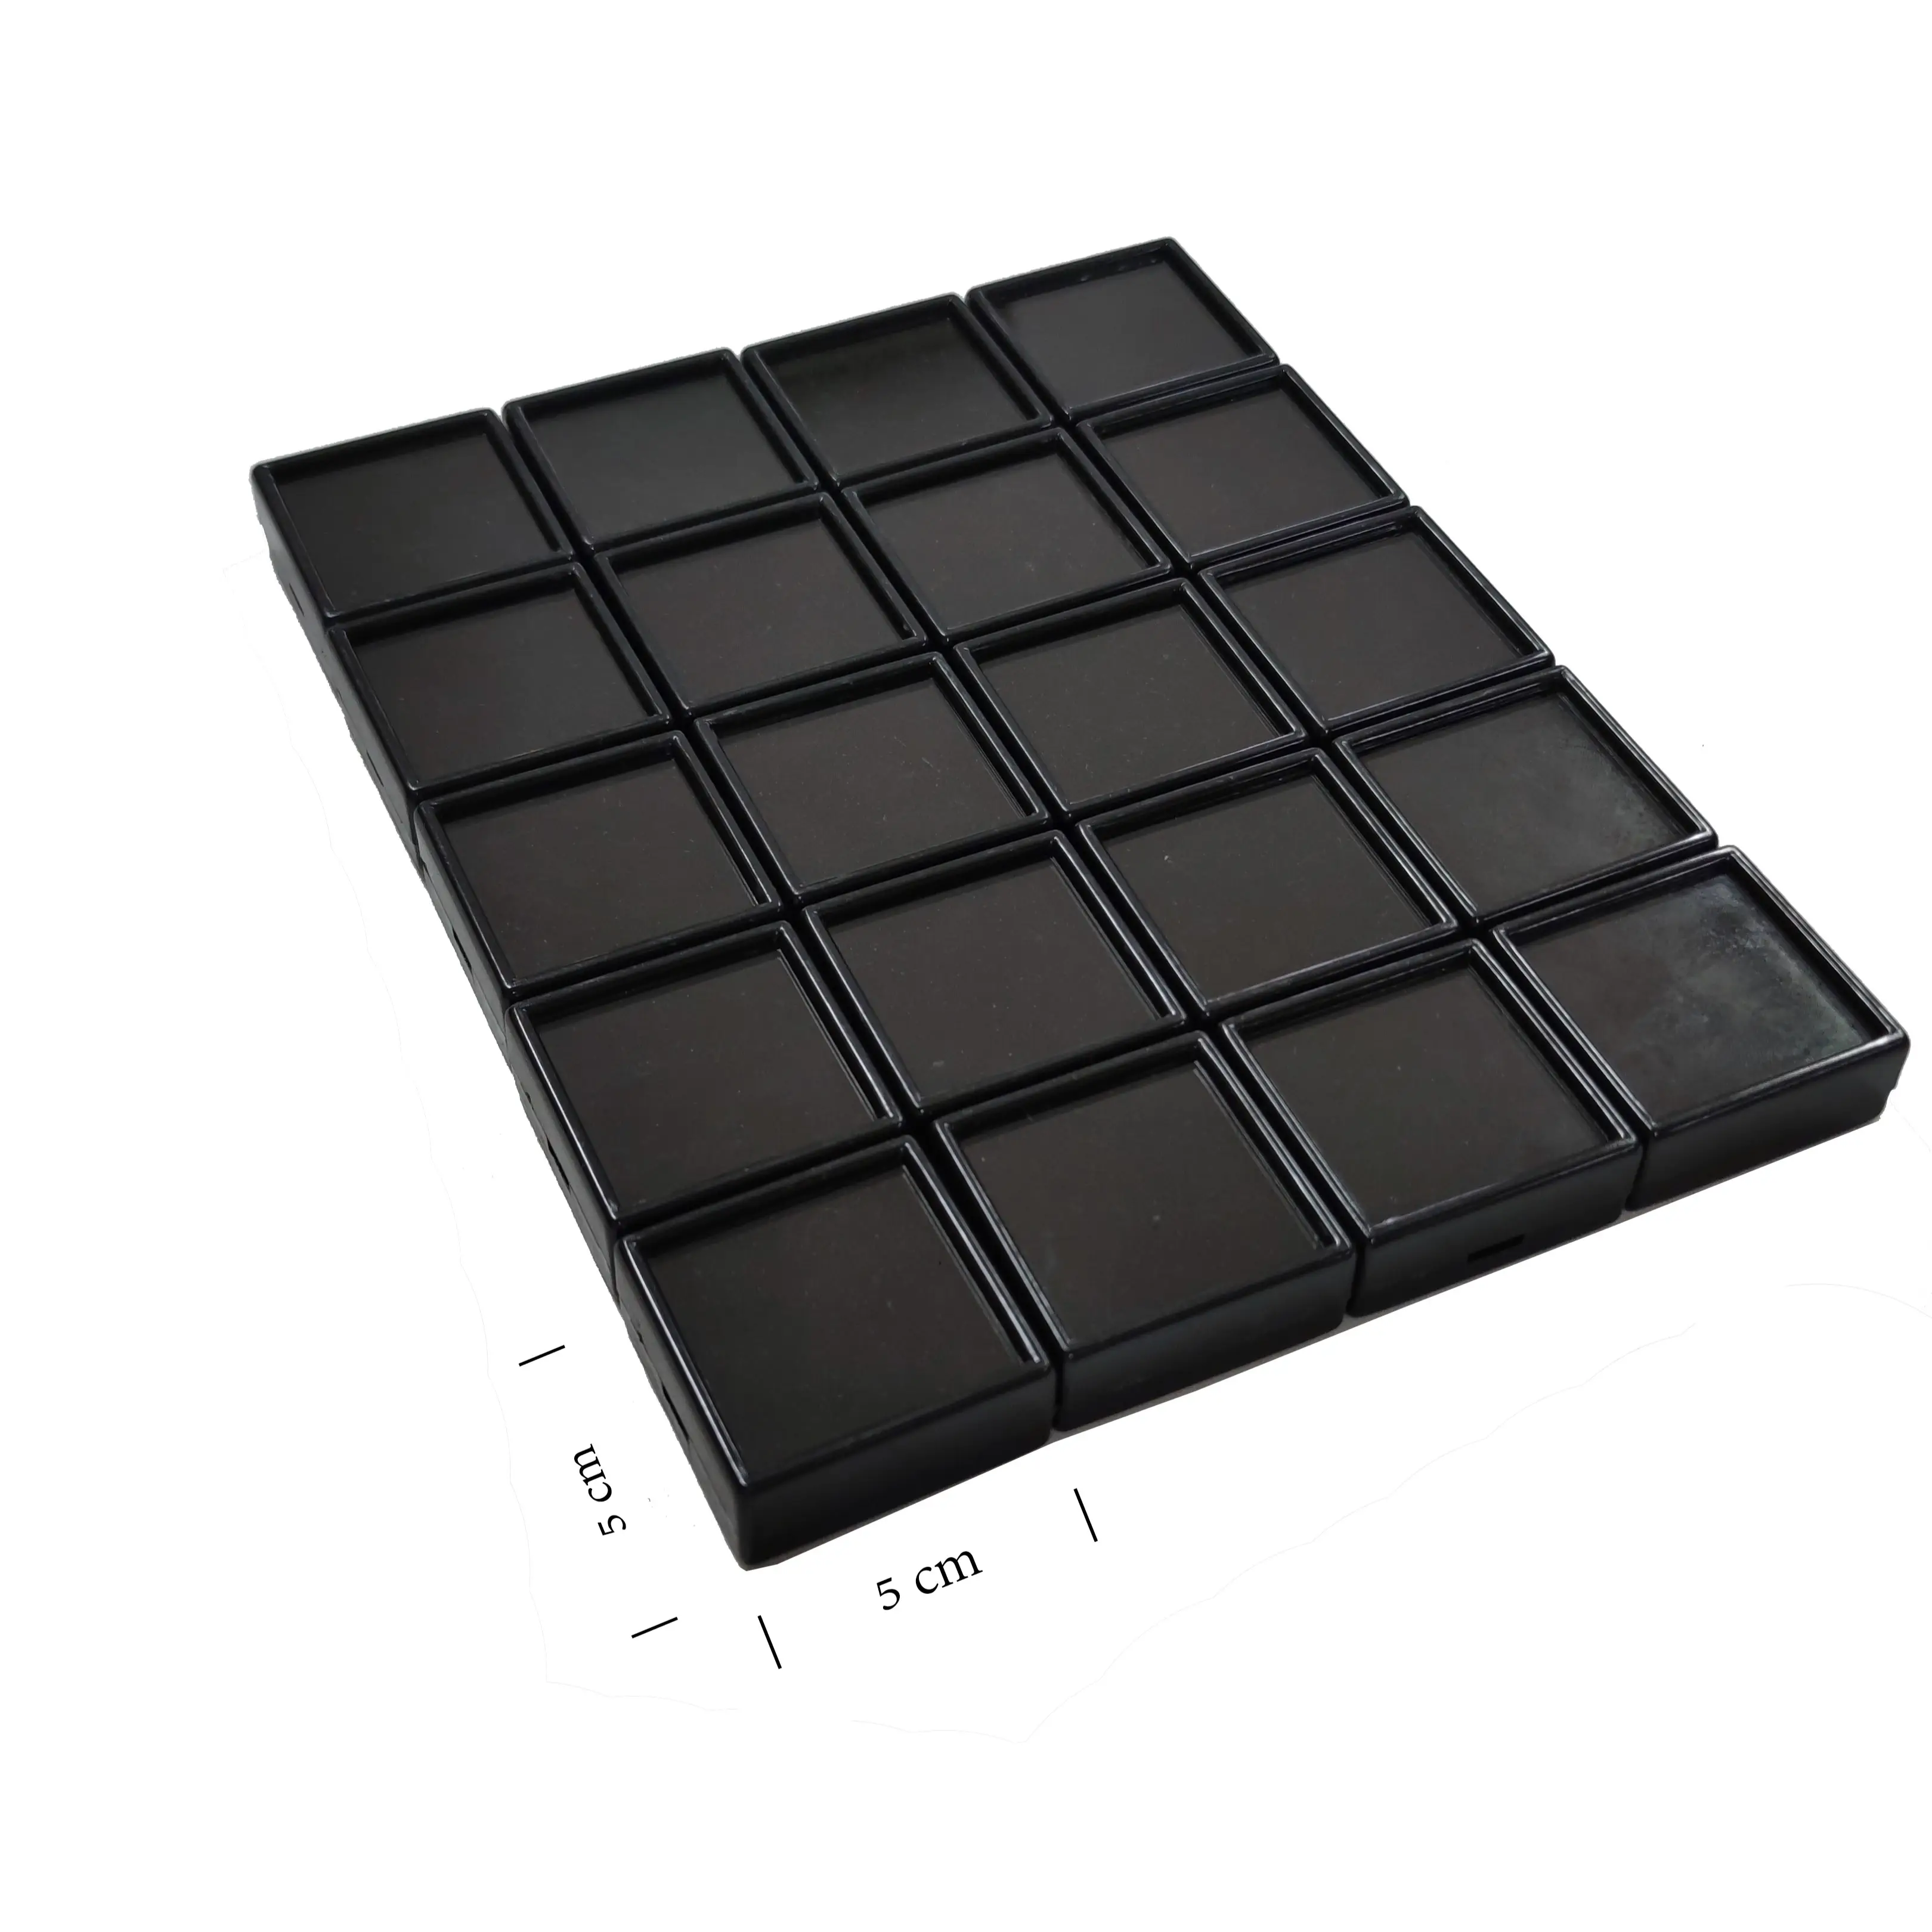 Beyaz veya siyah plastik taşlar kutusu cam kapaklı, boyut 5x5 cm, siyah kadife sünger insert